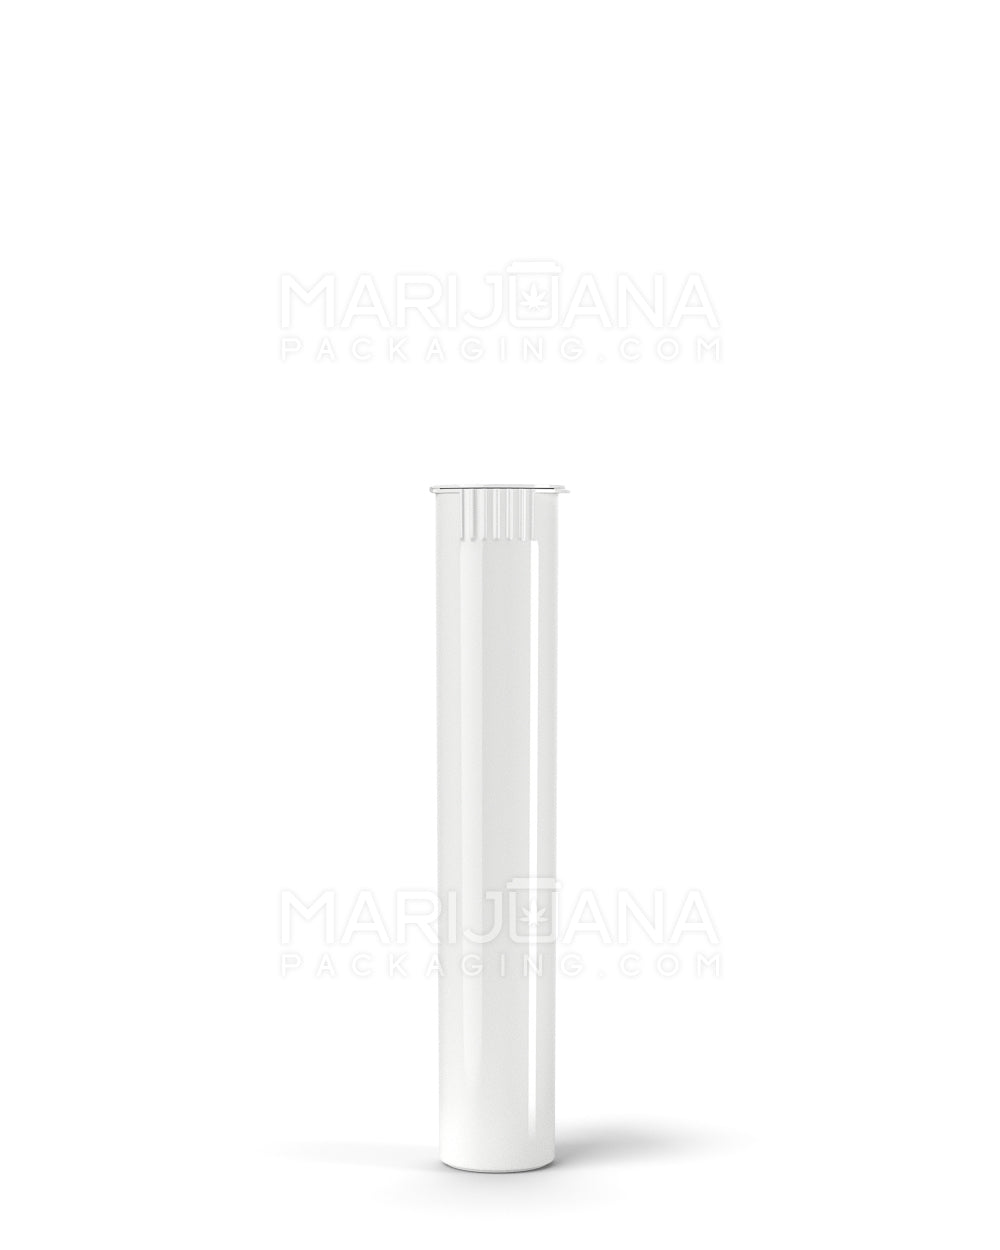 Child Resistant Pop Top Vape Cartridge Tube | 80mm - White | Sample - 3